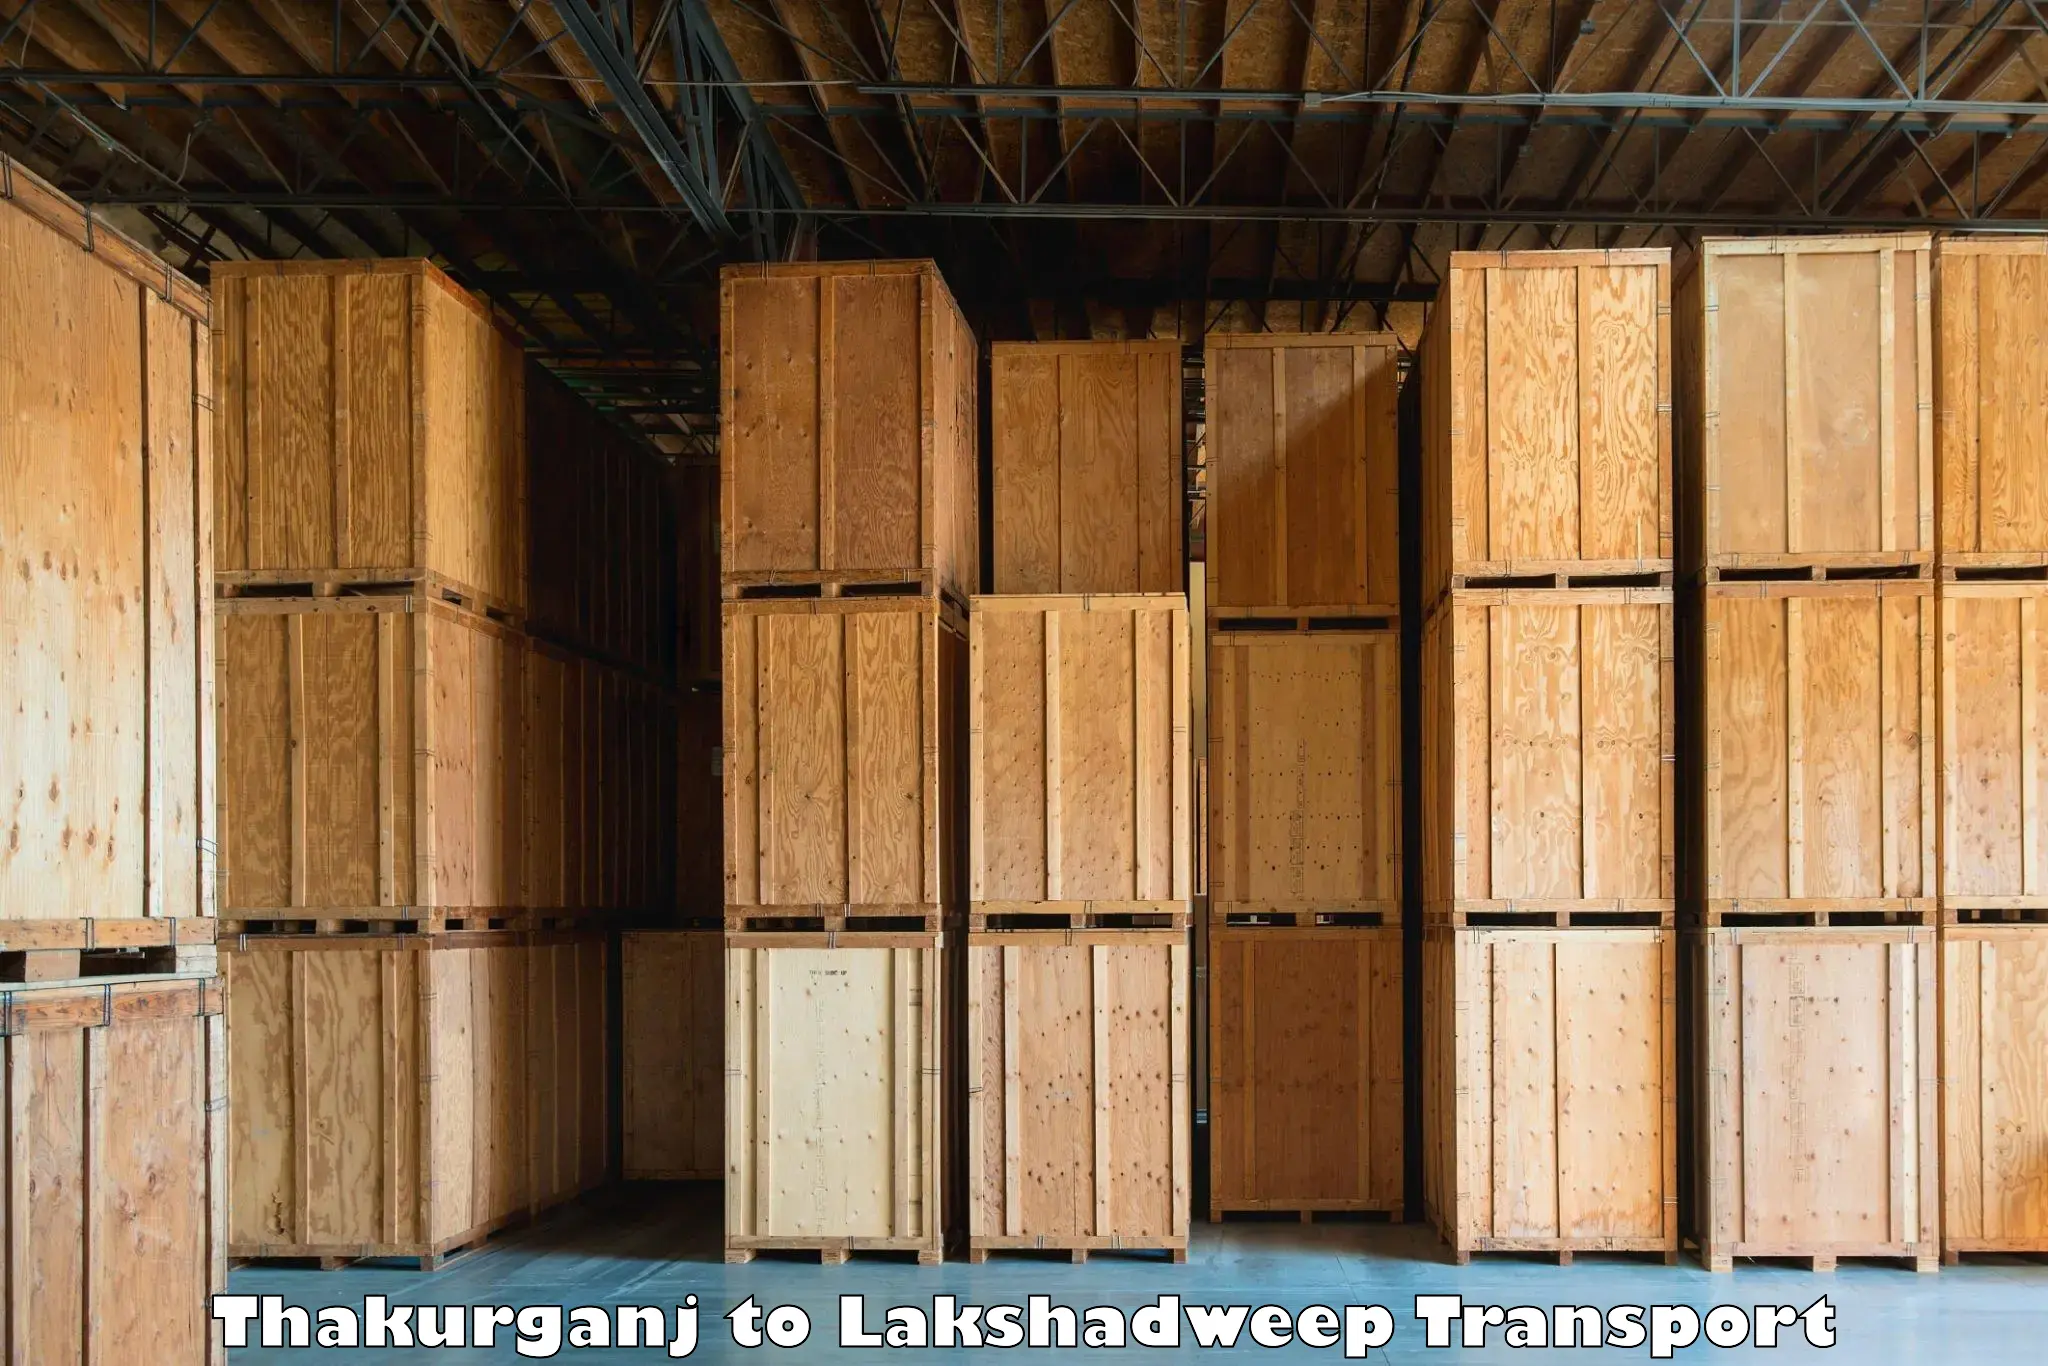 Transport shared services Thakurganj to Lakshadweep